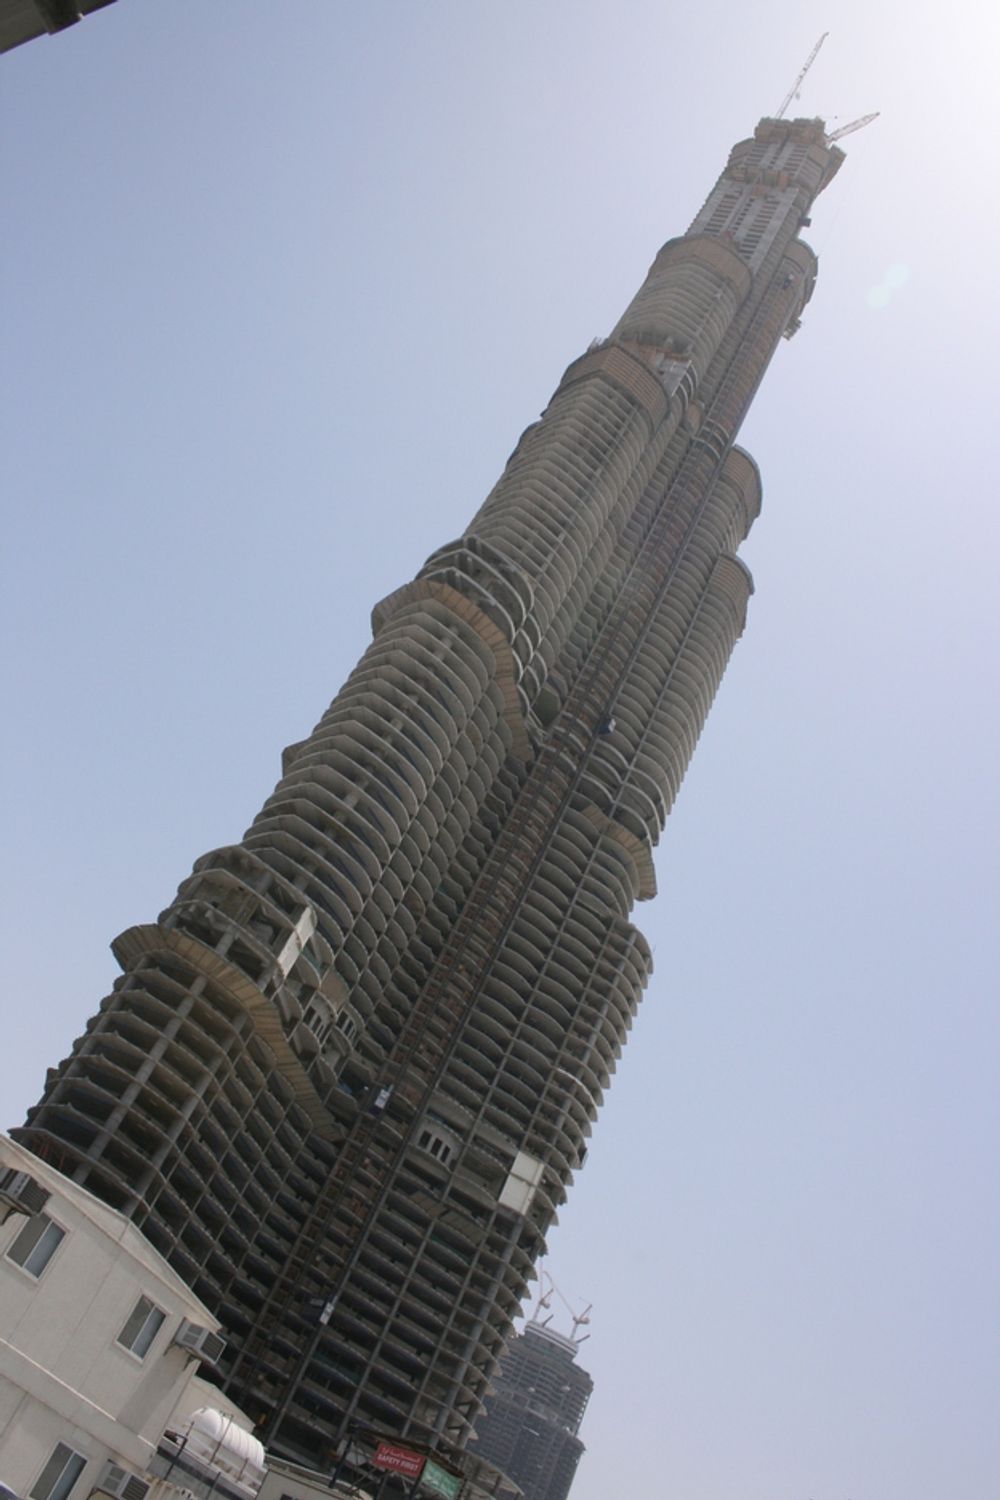 Dubai: Ikke det skjeve tårn i Pisa men Burj Dubai sett gjennom et  skrått kamera.